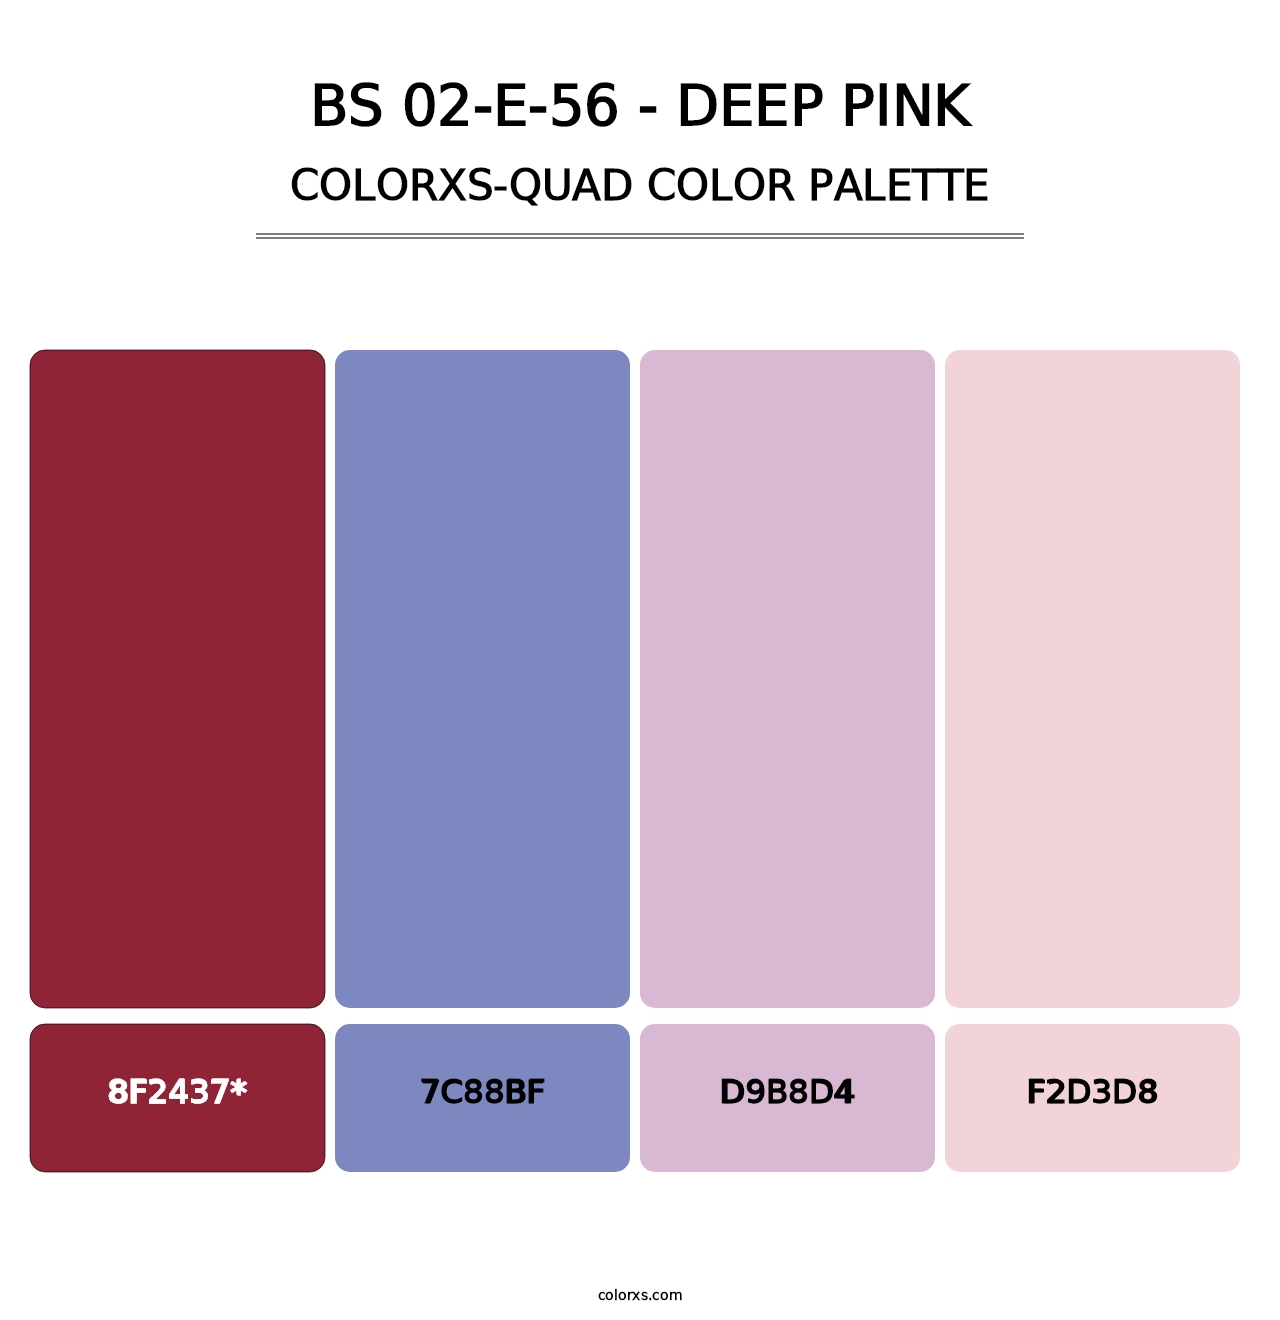 BS 02-E-56 - Deep Pink - Colorxs Quad Palette